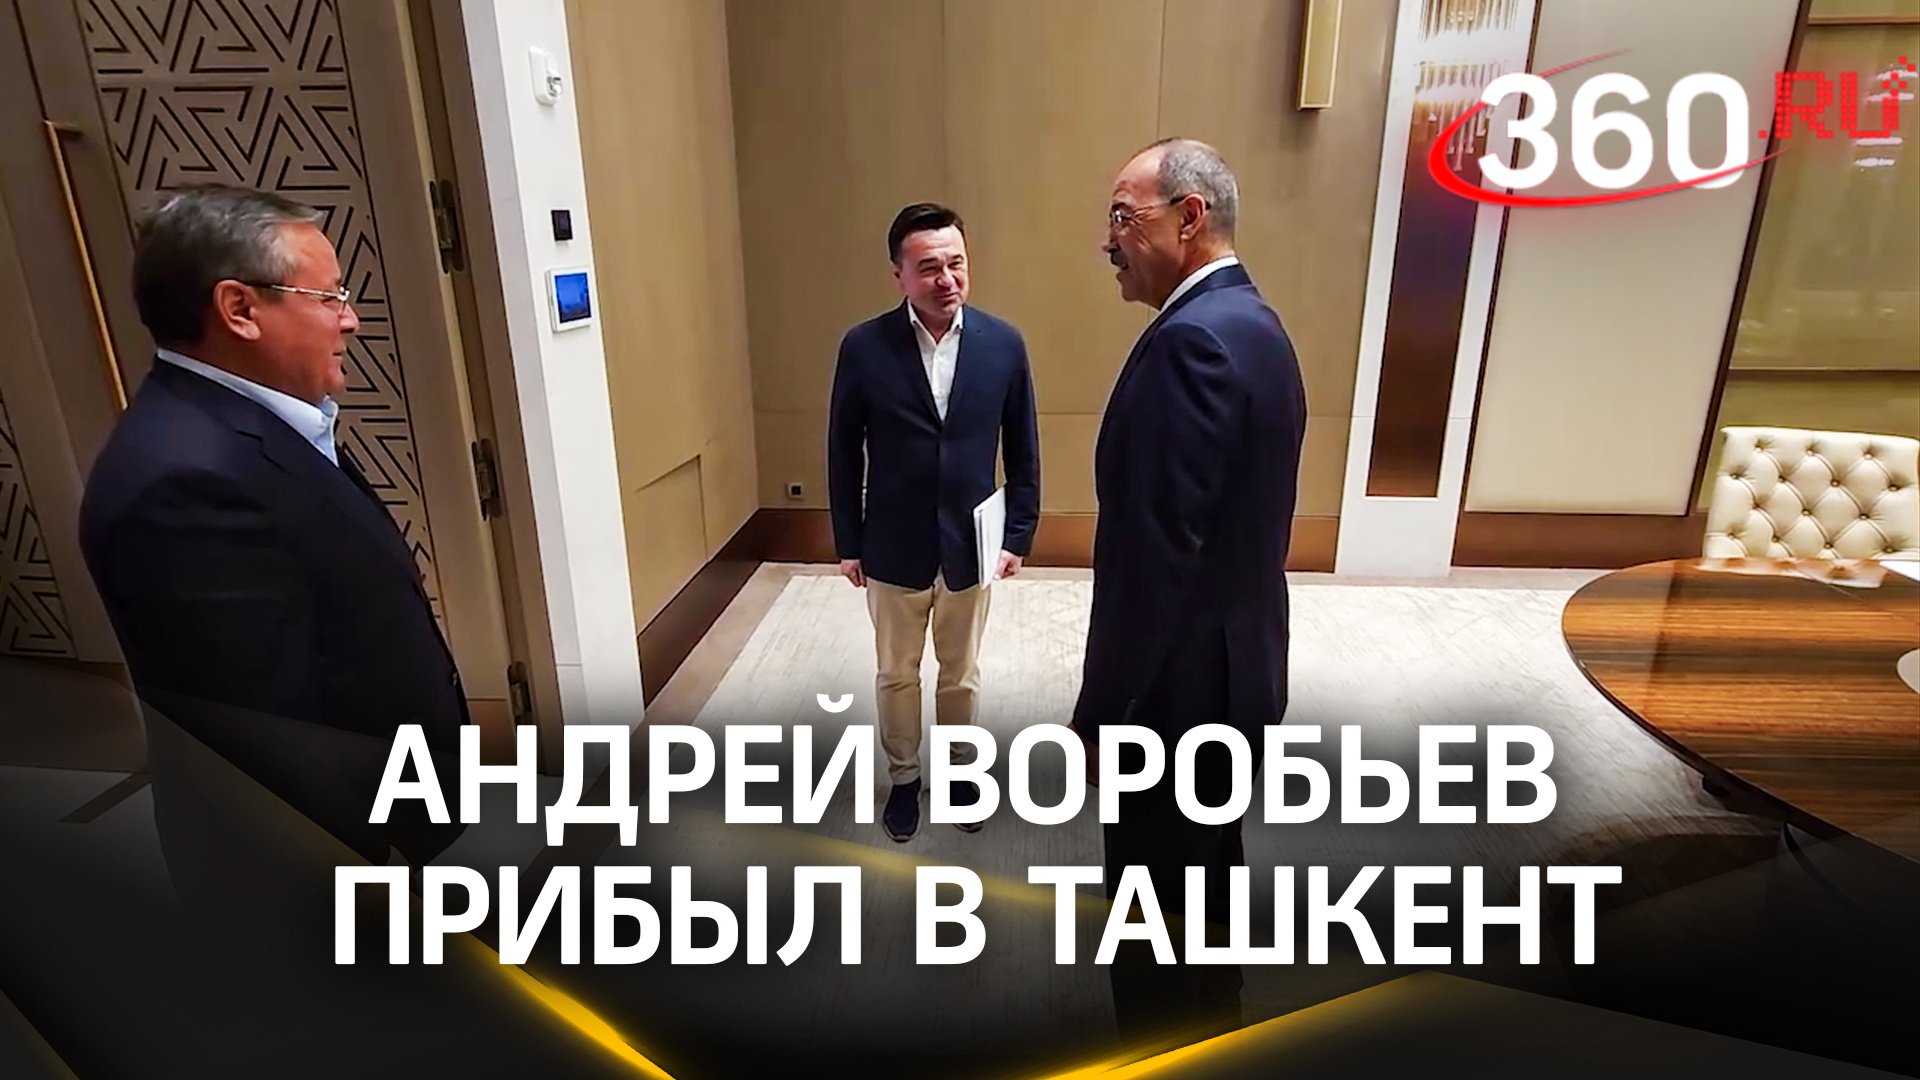 Андрей Воробьев прибыл в Ташкент на форум России и Узбекистана